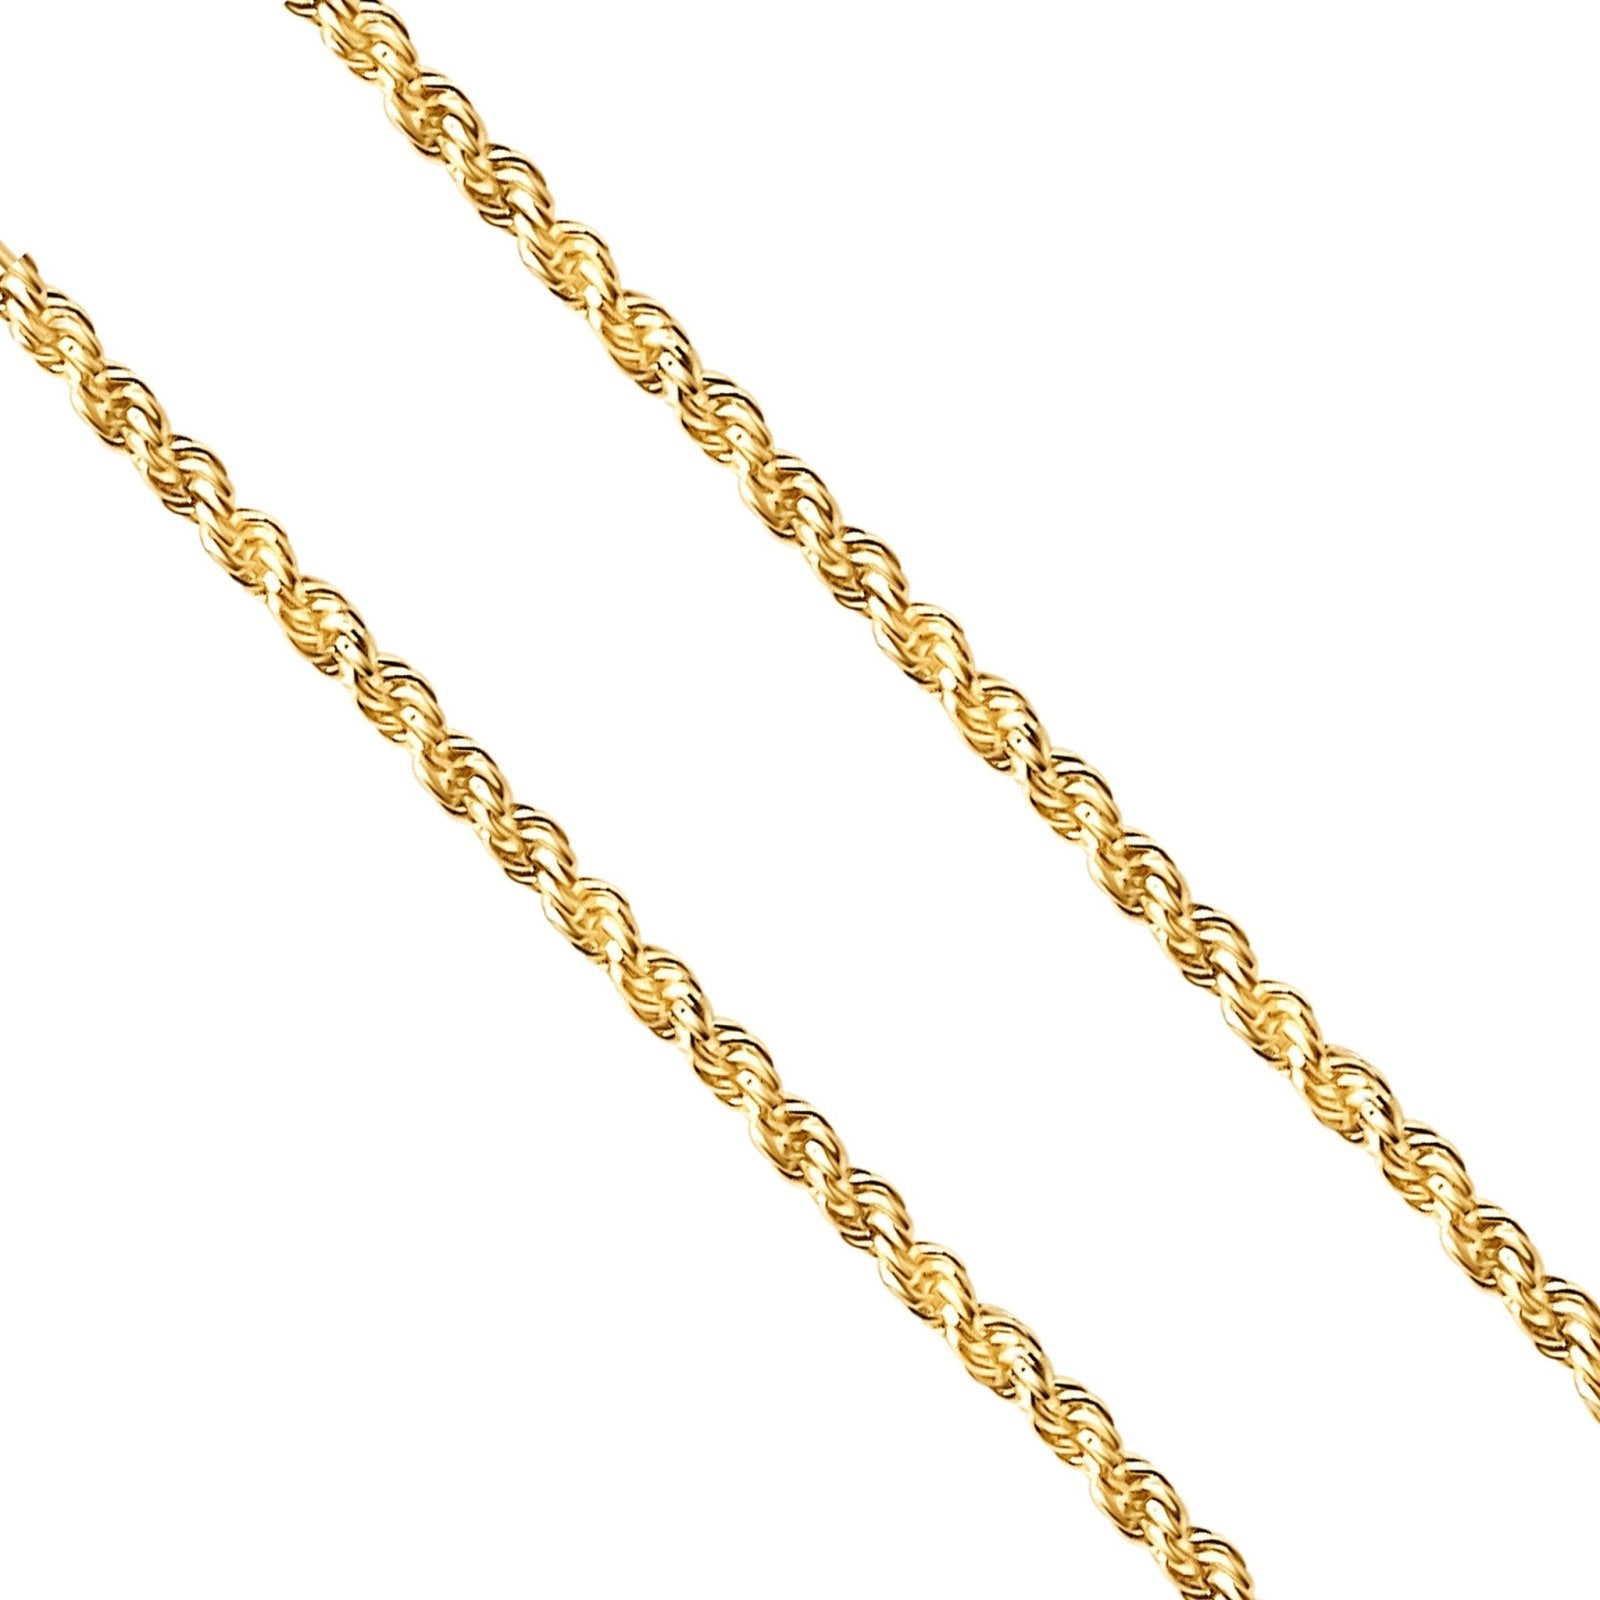 Gold Vermeil Rope Chain - Honoura